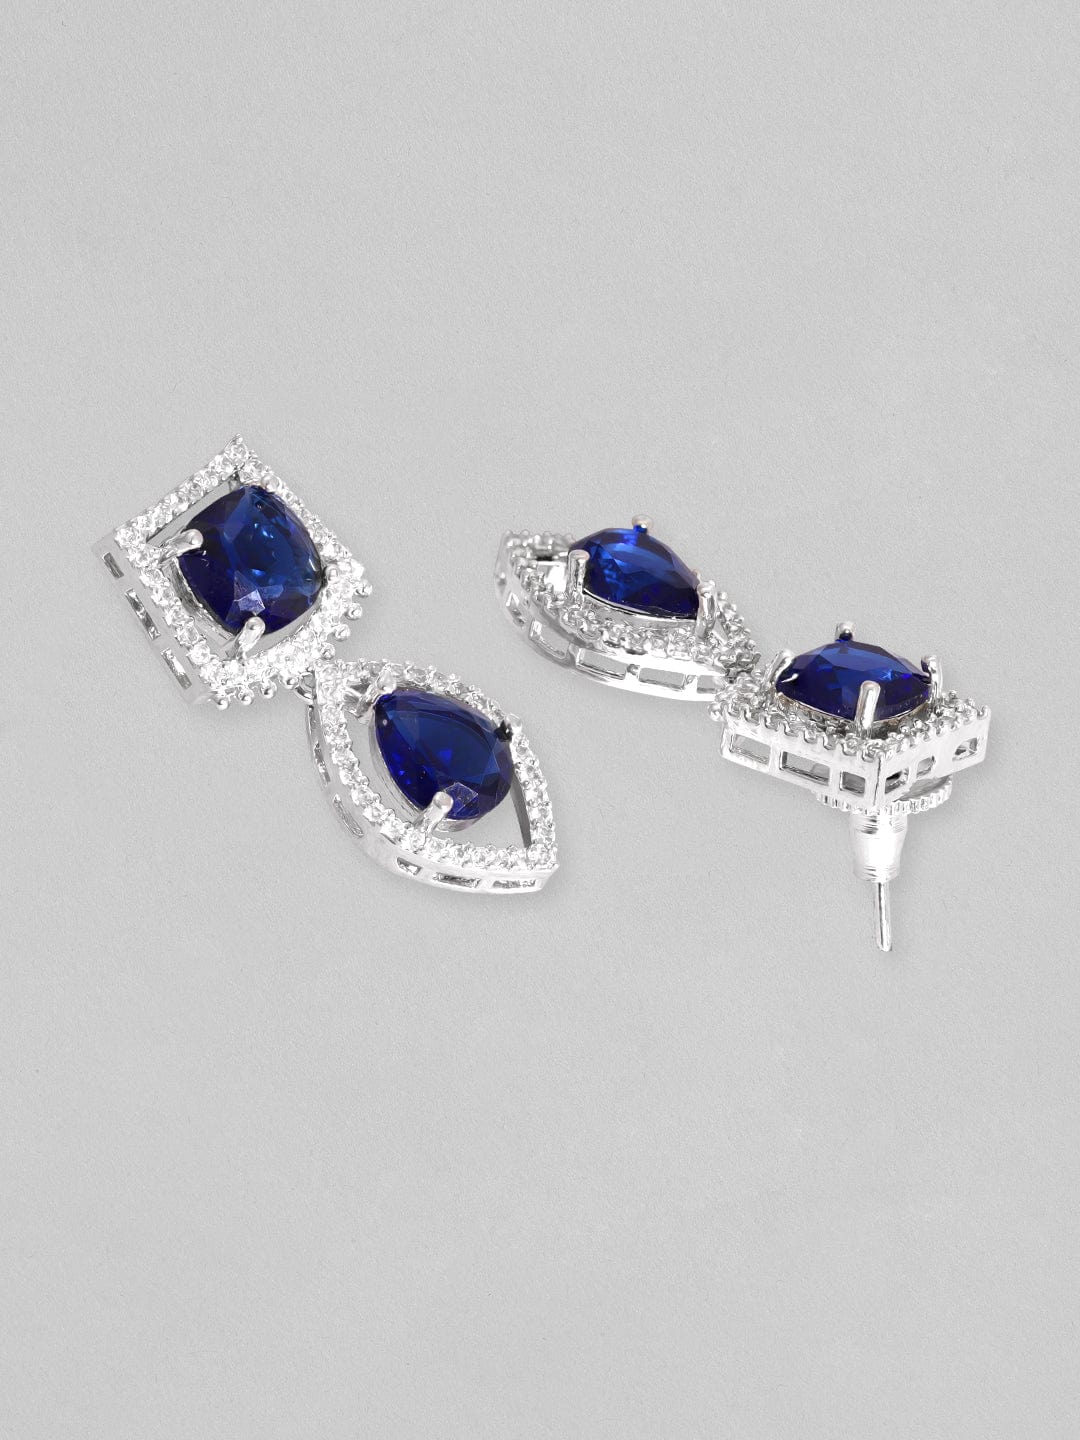 Rubans Rhodium Plated Premium White &amp; Blue Sapphire Zircons Necklace Set. Necklace Set